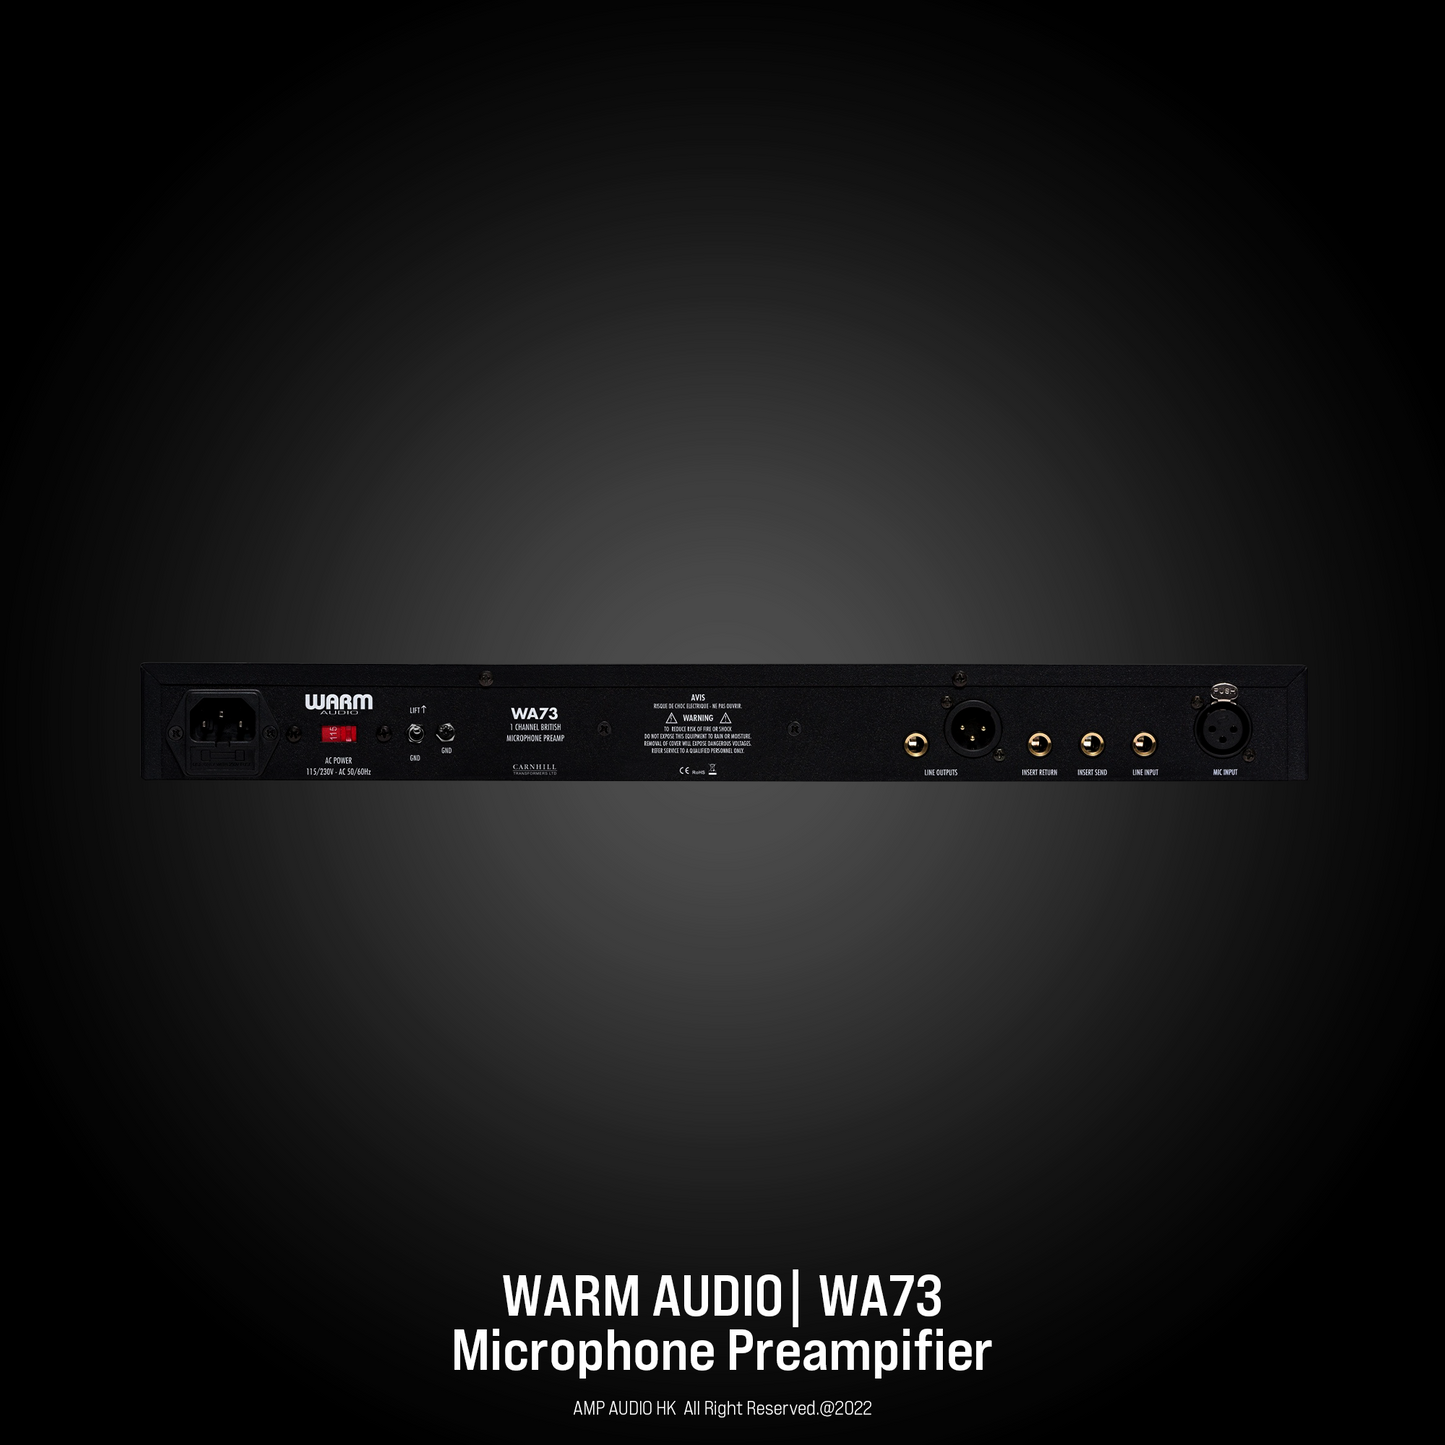 Warm Audio | WA73